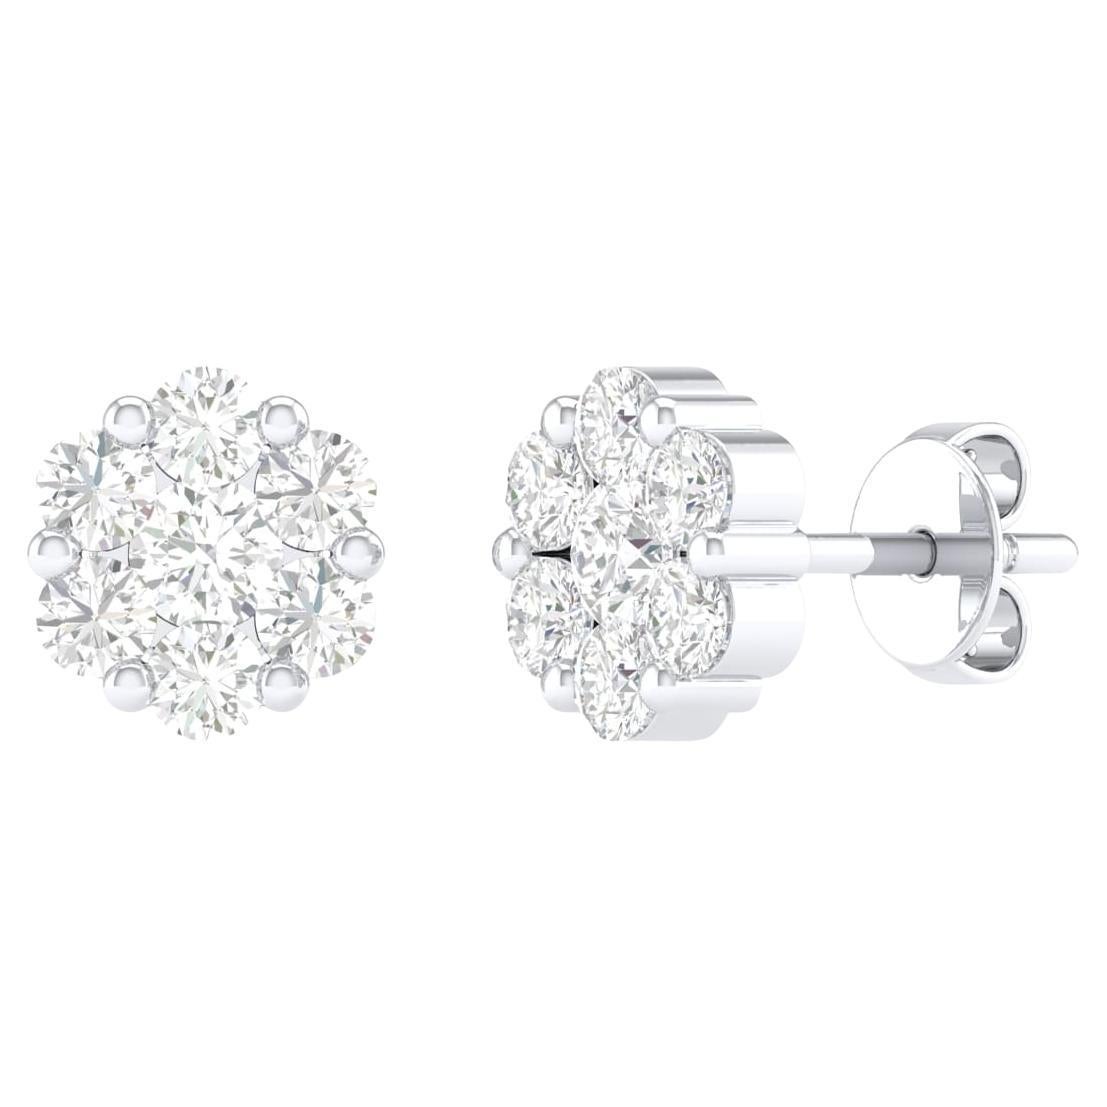 18 Karat White Gold 1.01 Carat Diamond Flower Stud Earrings